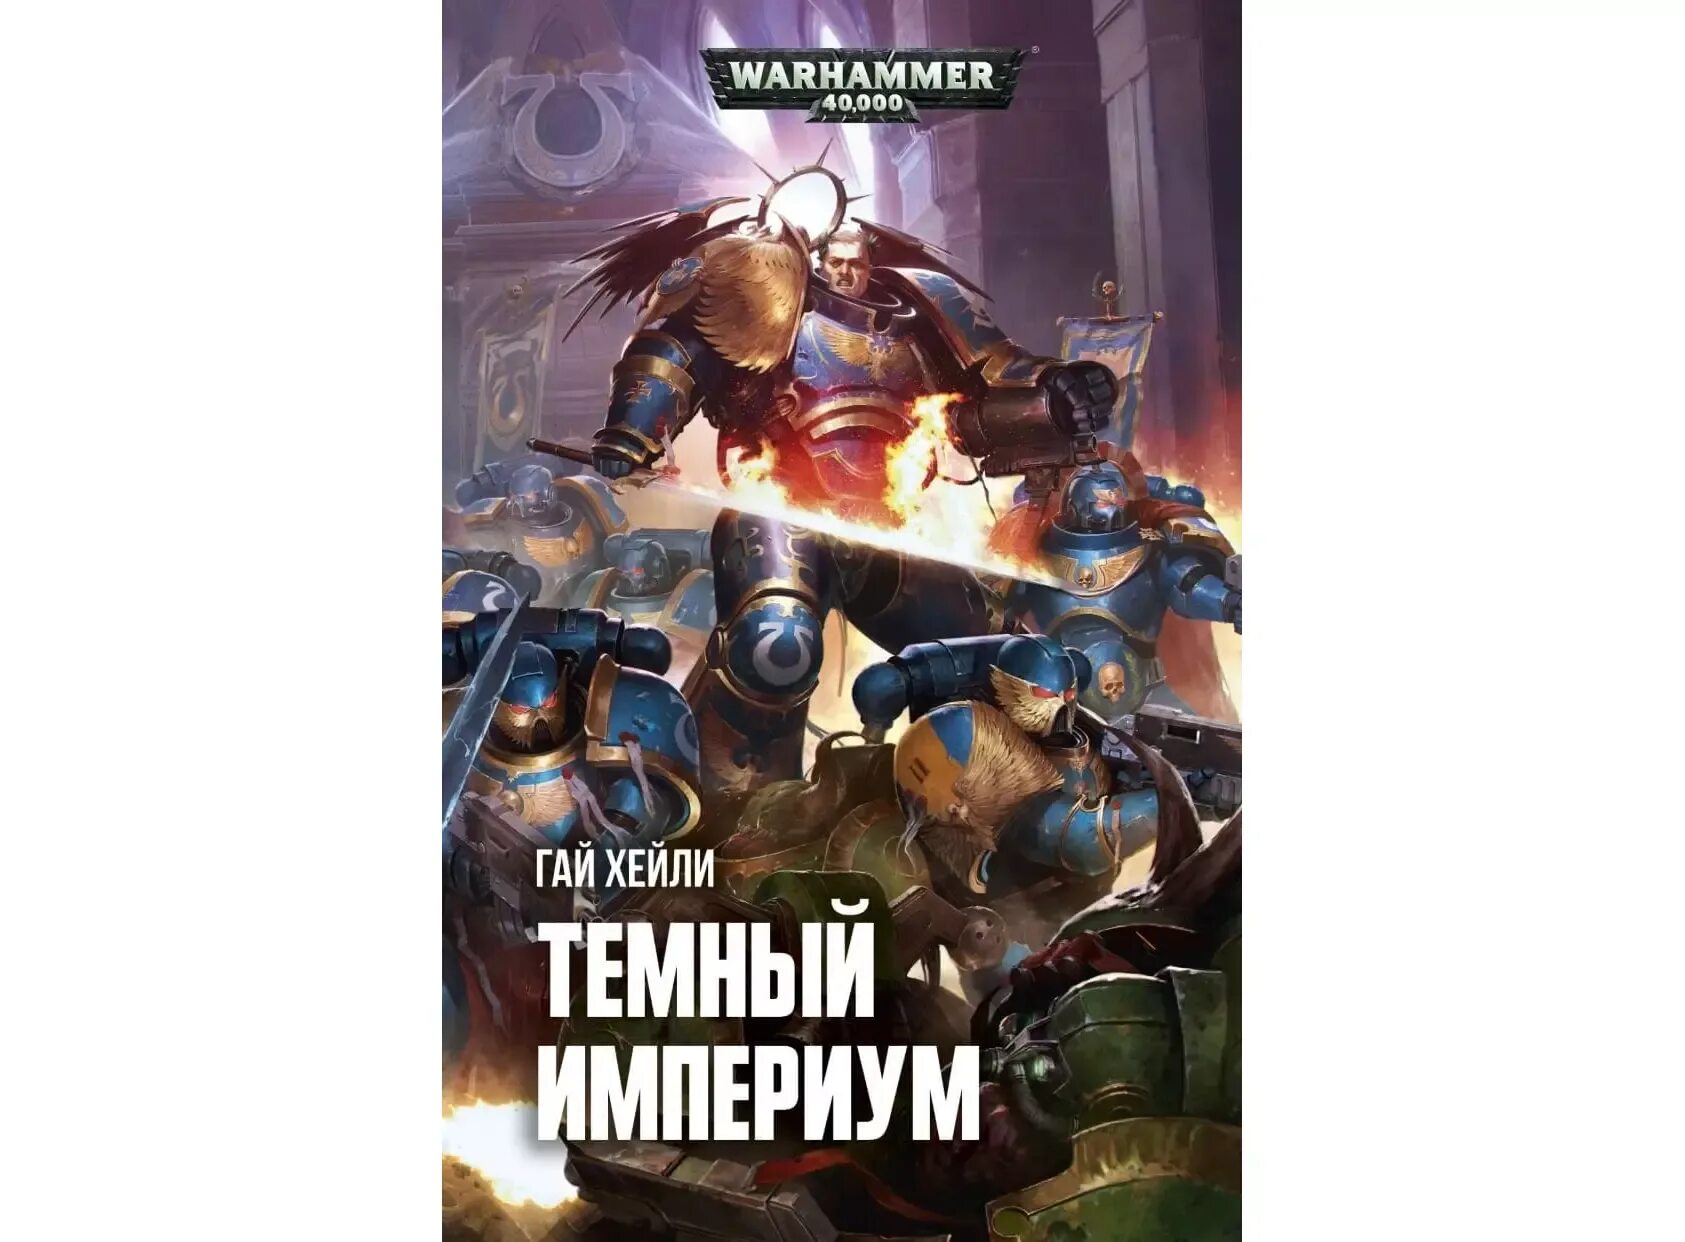 Warhammer книги купить. Тёмный Империум.